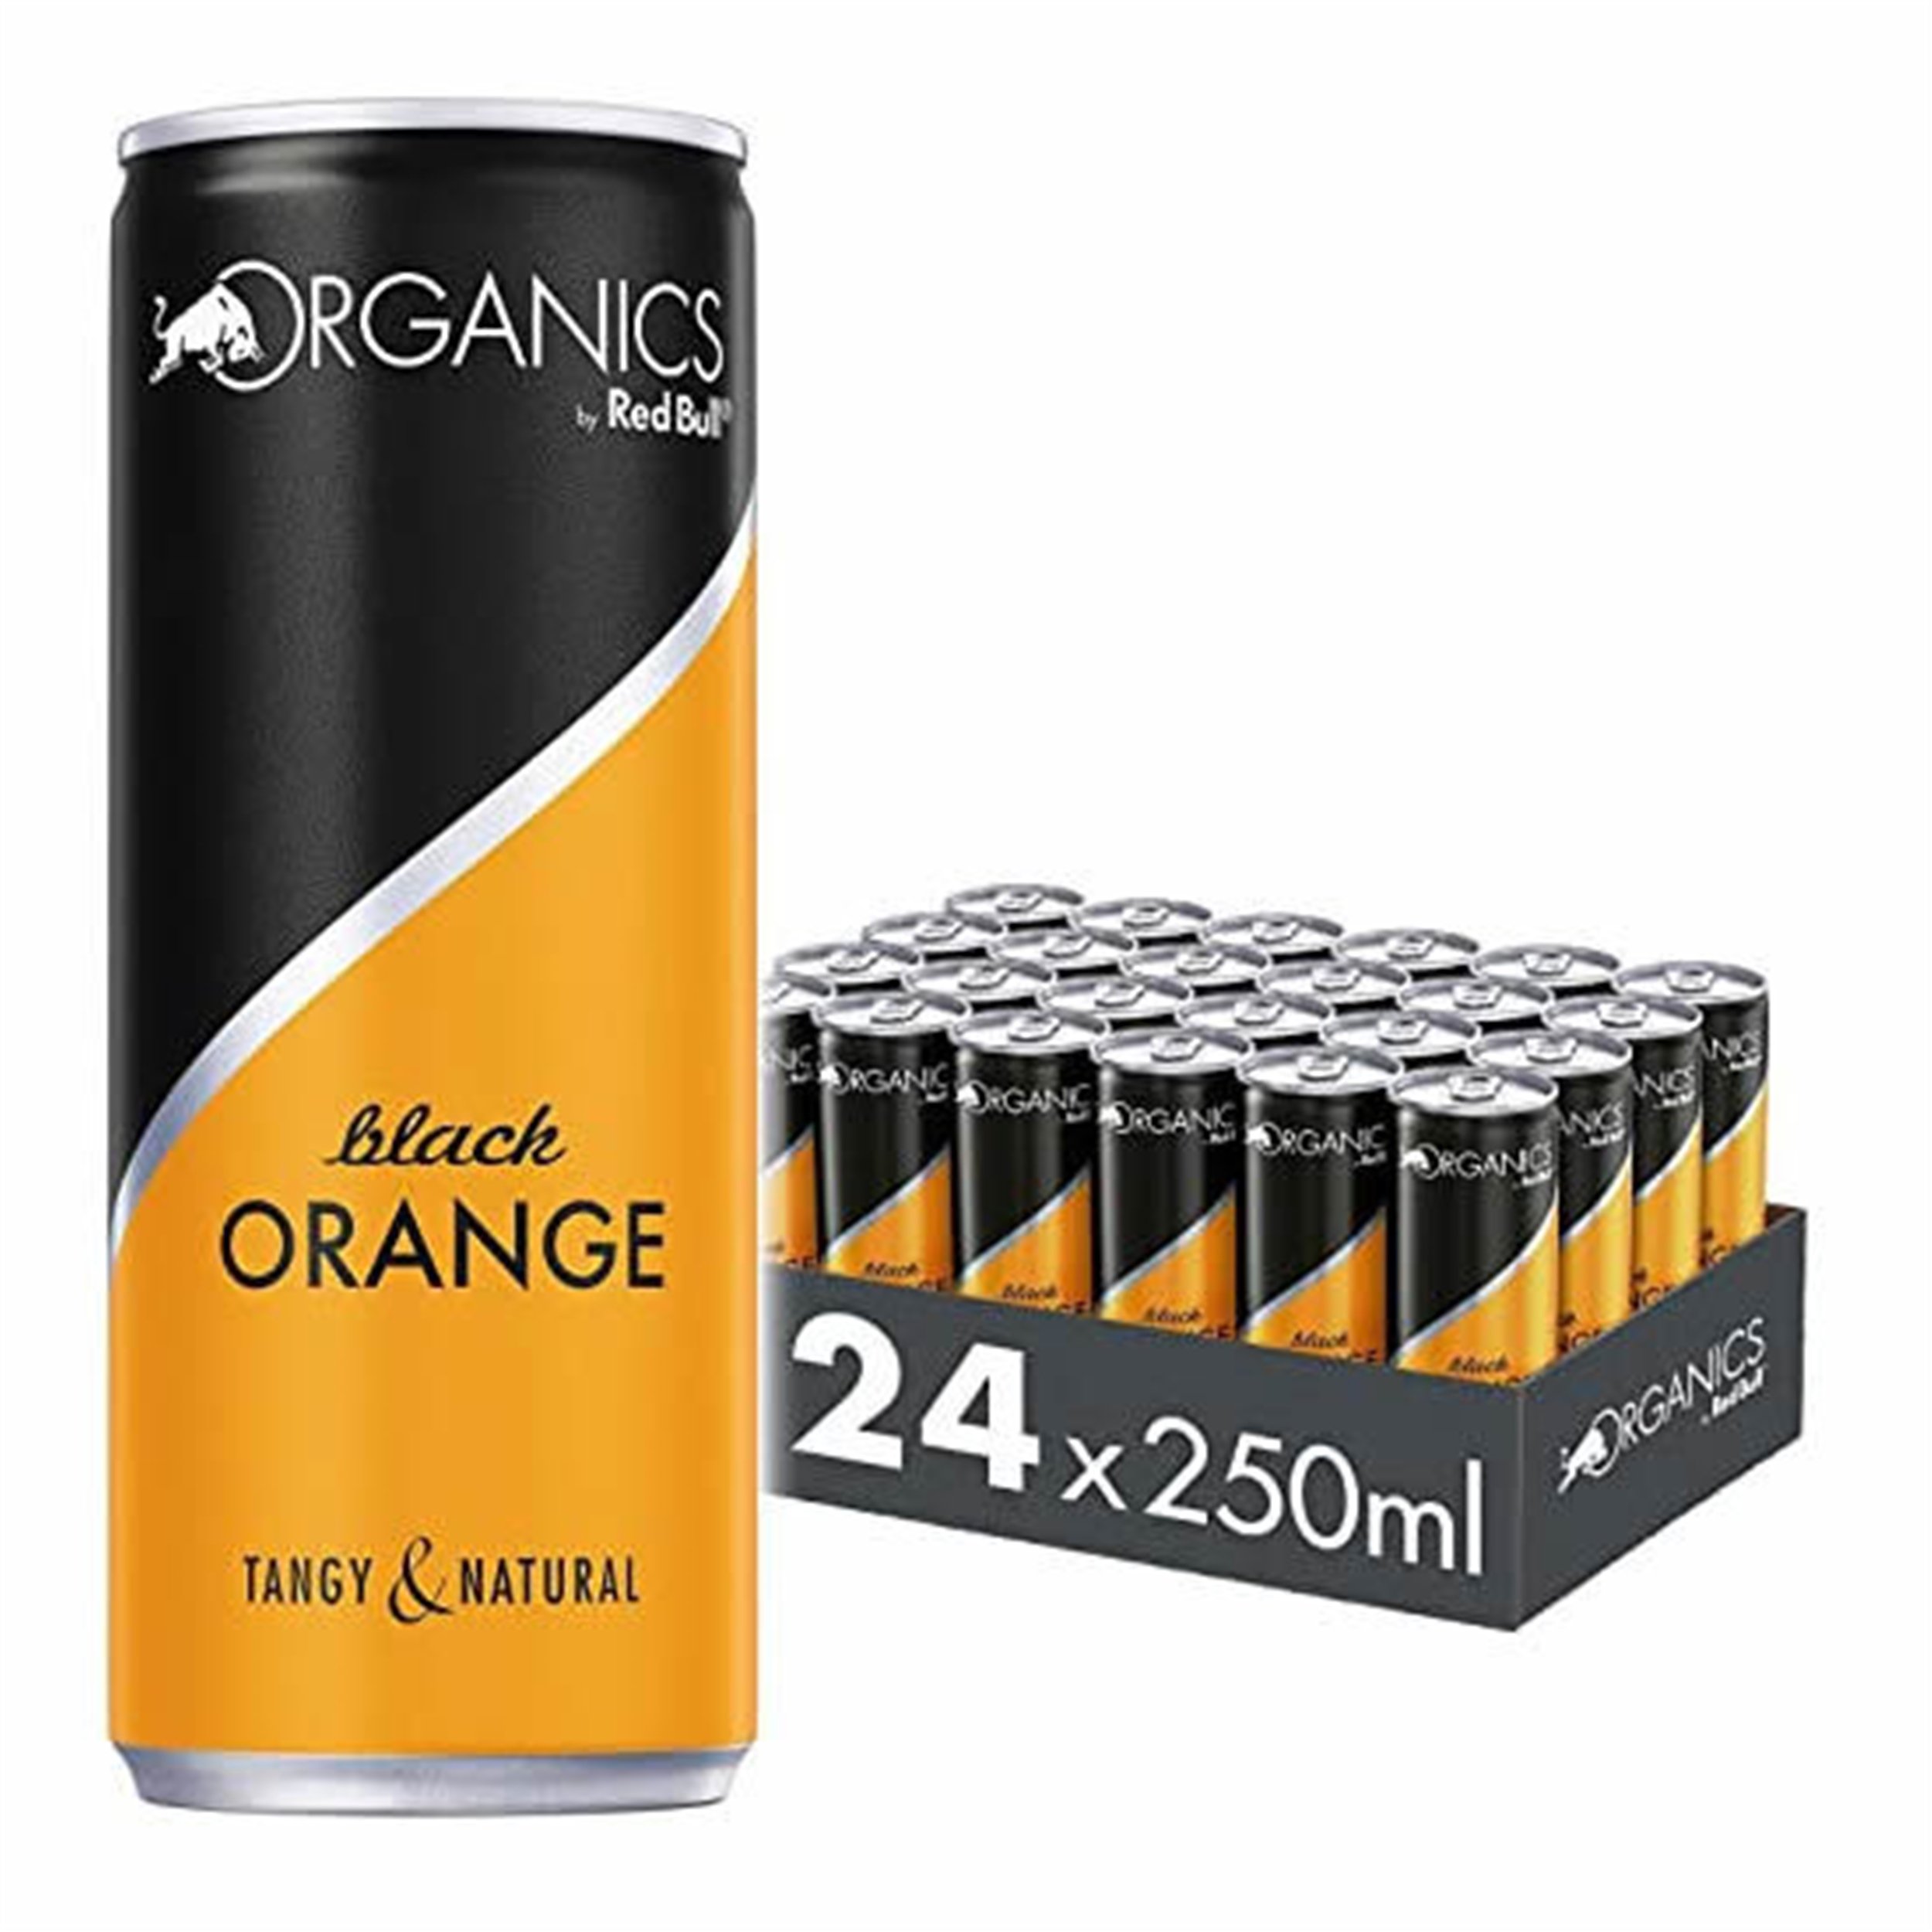 Red Bull Dark Orange 250 Ml. Organics Enerji İçeceği (24 Adet)  (KUTU-RBL-238510) | Afeks Yapı Market